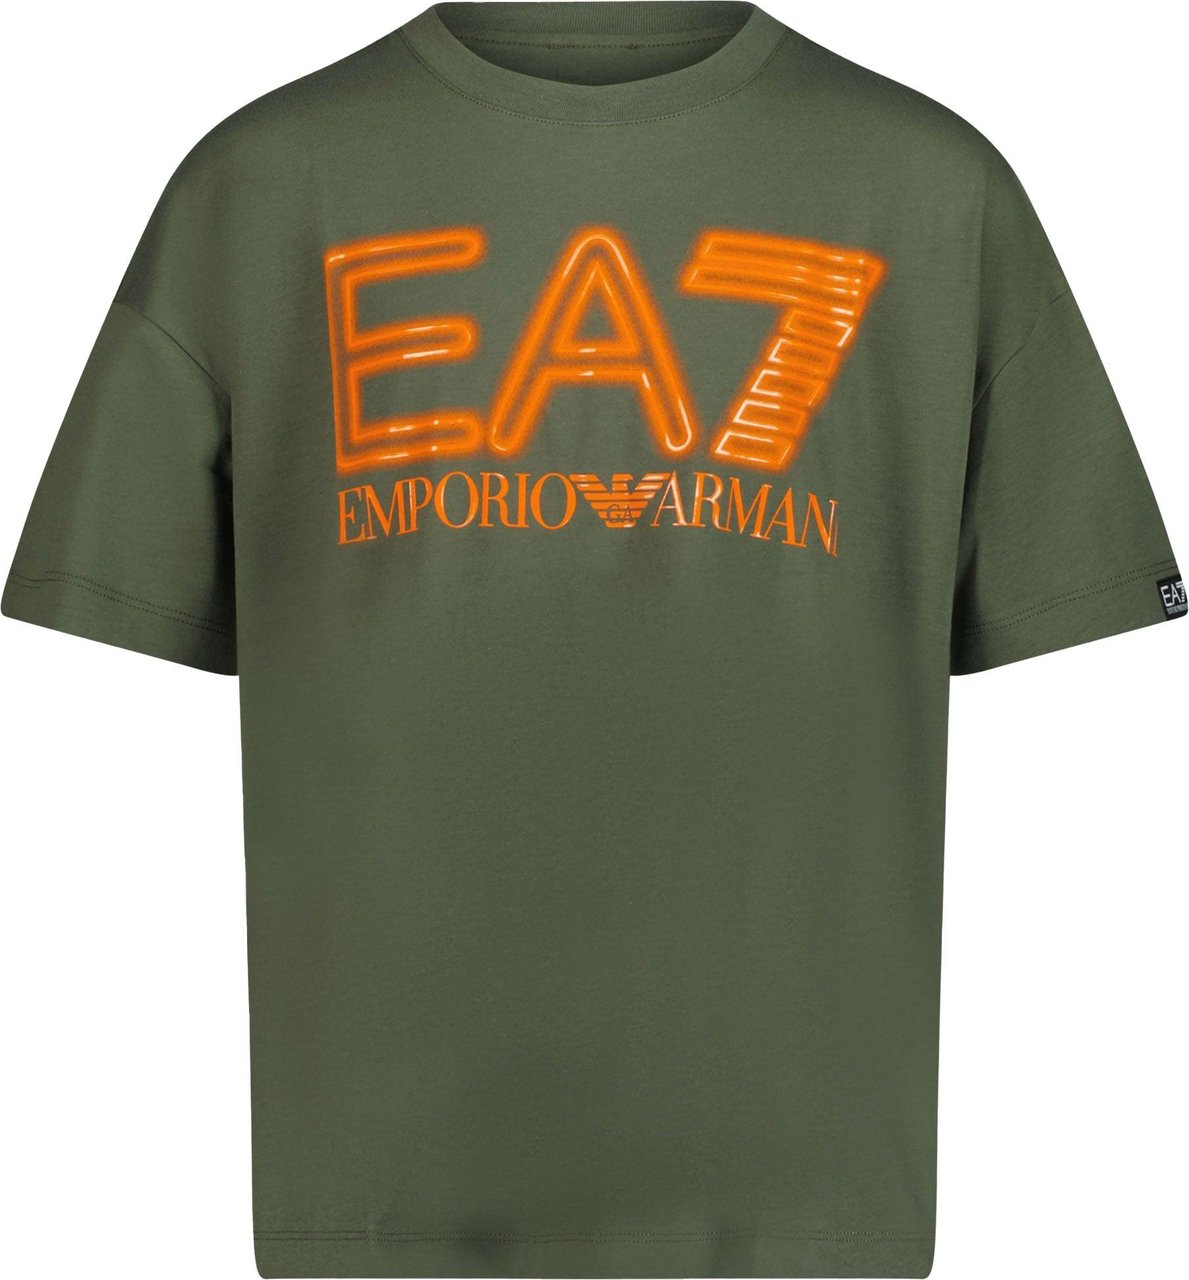 EA7 EA7 Kinder Jongens T-shirt Army Groen